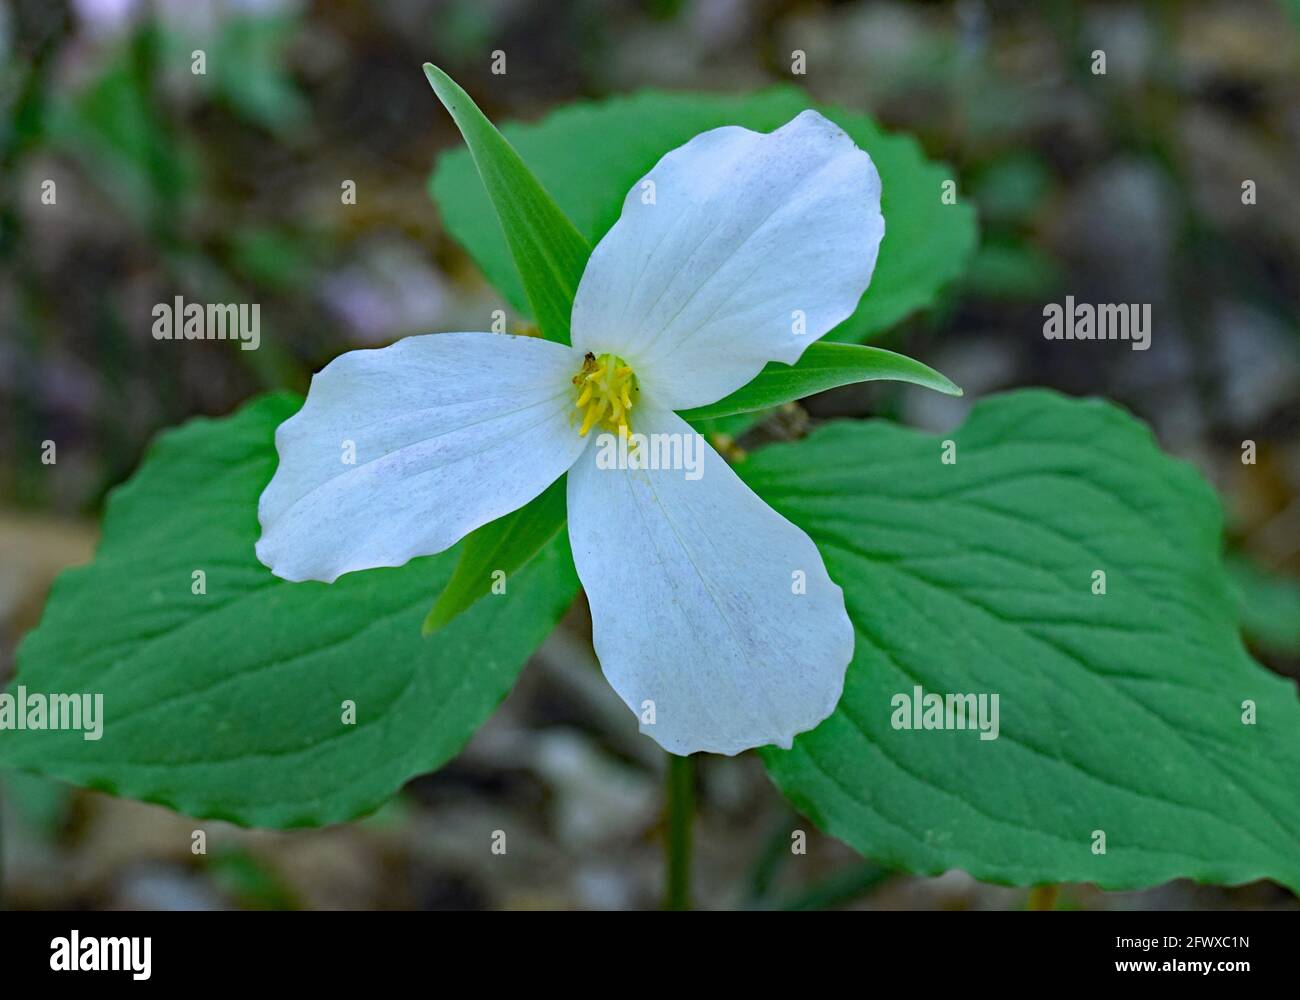 Trillium, eine dreiblättrige weiße Blume, die in schattigen Gebieten im Wald wächst, das florale Symbol der Provinz Ontario Stockfoto